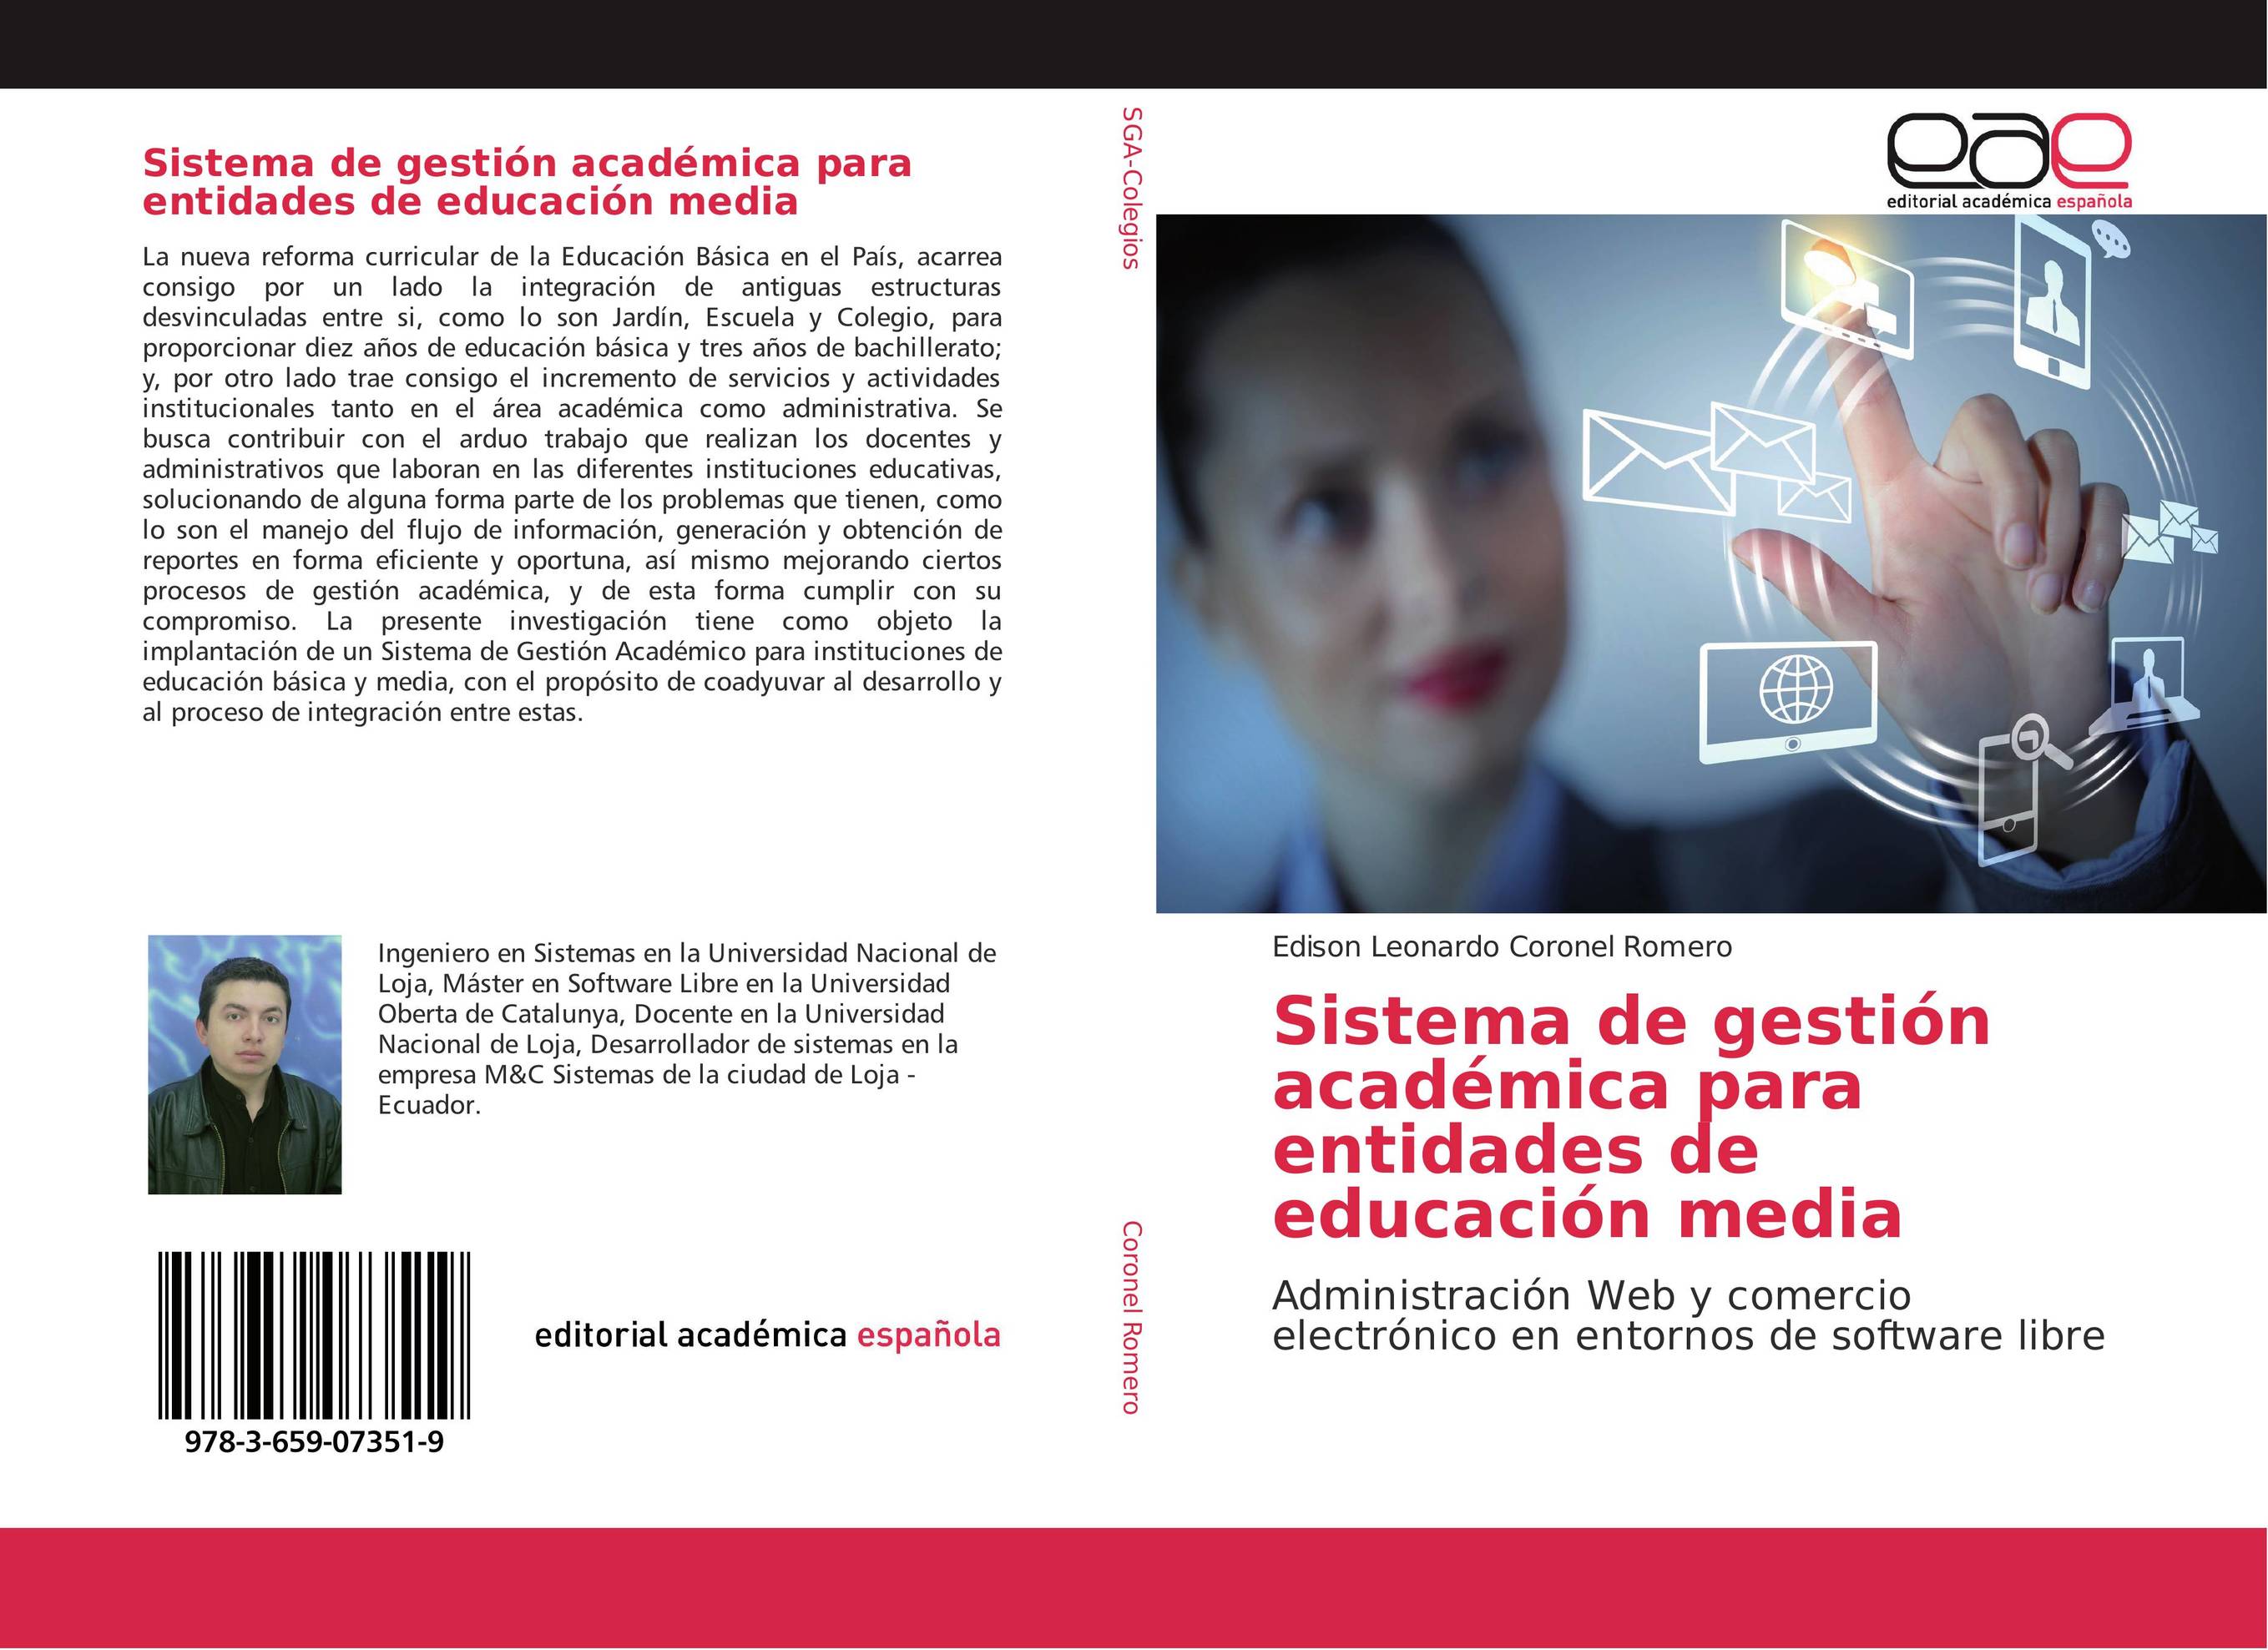 Sistema de gestión académica para entidades de educación media